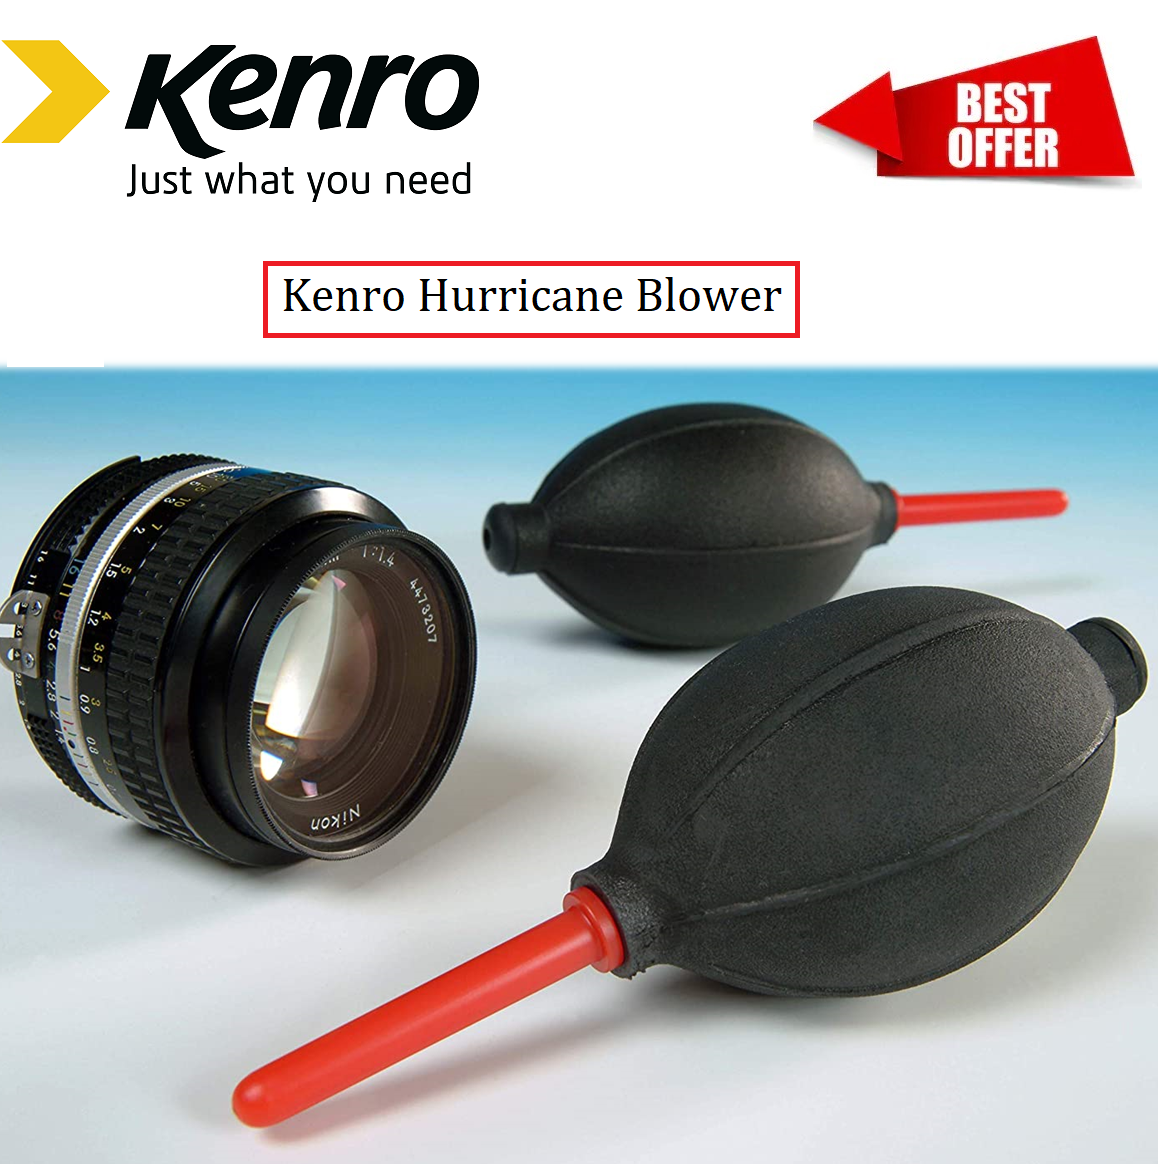 Kenro new Hurricane Blower